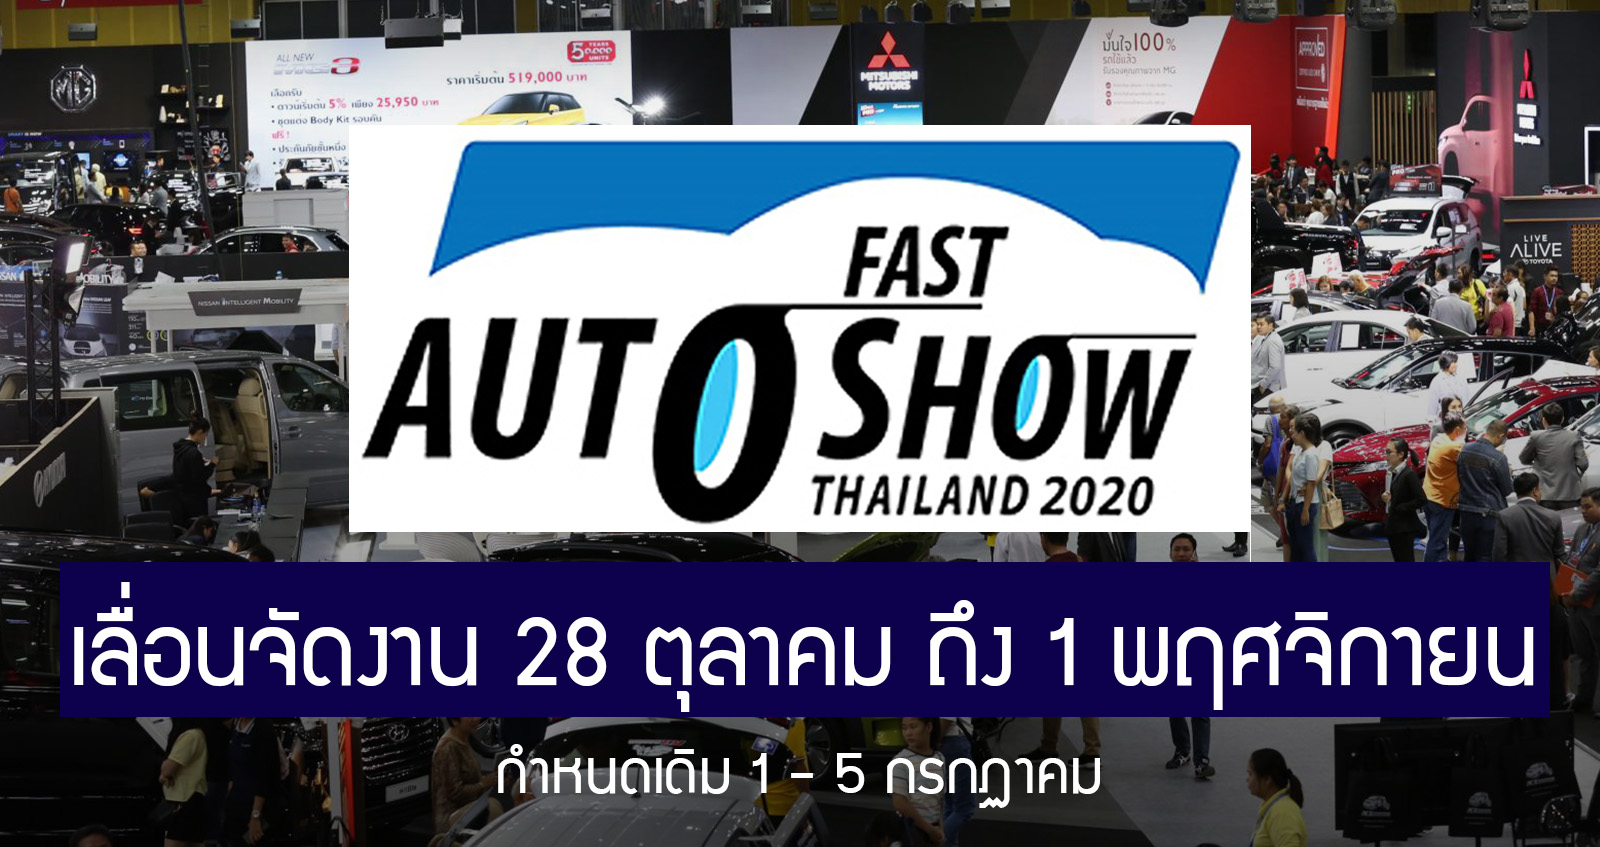 เลื่อนอีกงาน! FAST Auto Show Thailand 2020 กำหนดการใหม่ 28 ต.ค. ถึง 1 พ.ย. 63